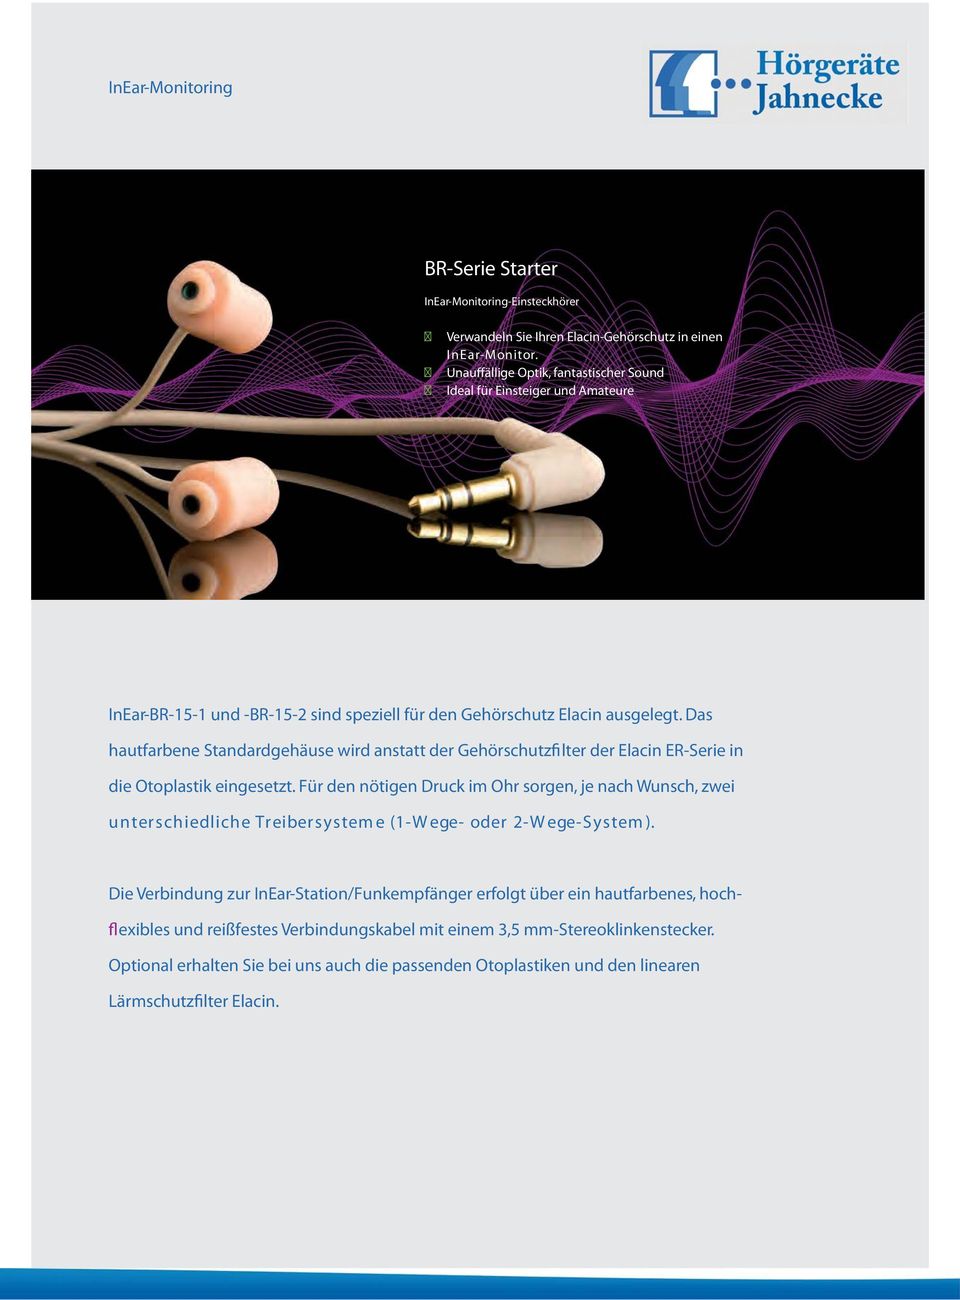 Das hautfarbene Standardgehäuse wird anstatt der Gehörschutzfi lter der Elacin ER-Serie in die Otoplastik eingesetzt.